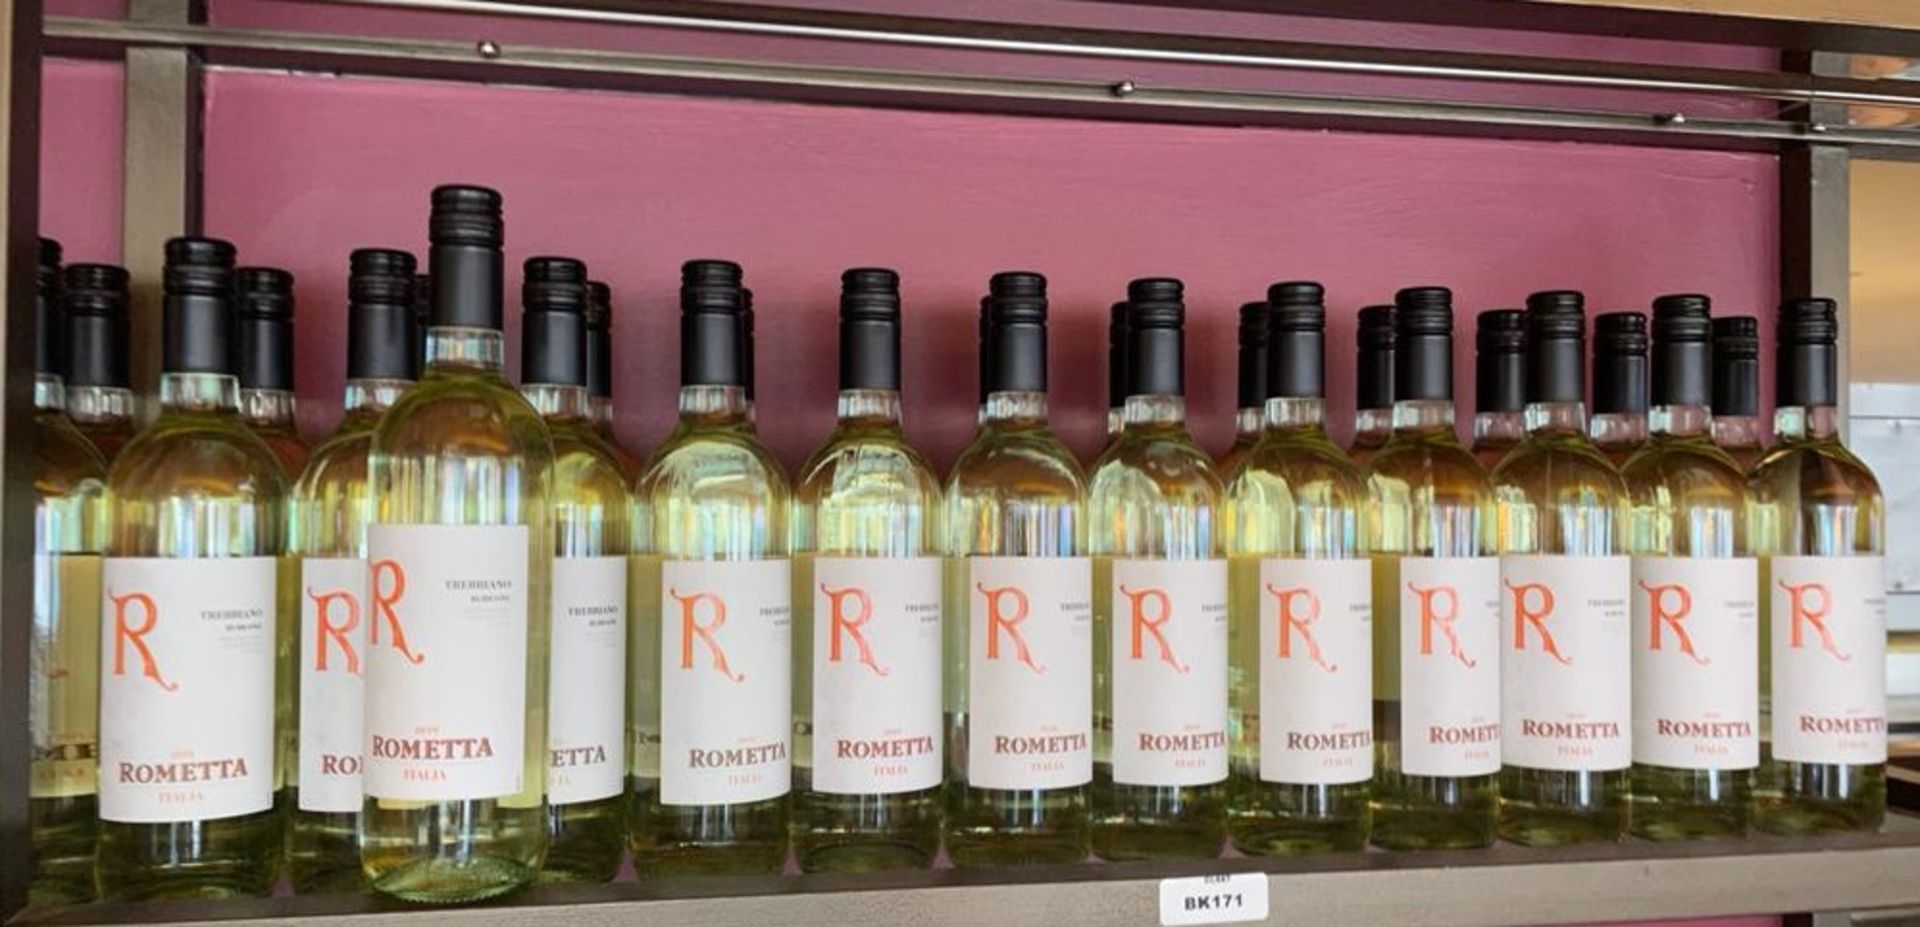 27 x Bottles of Rometta Trebbiano Rubicone Italian White Wine - Ref: BK171 - CL686 - Location: